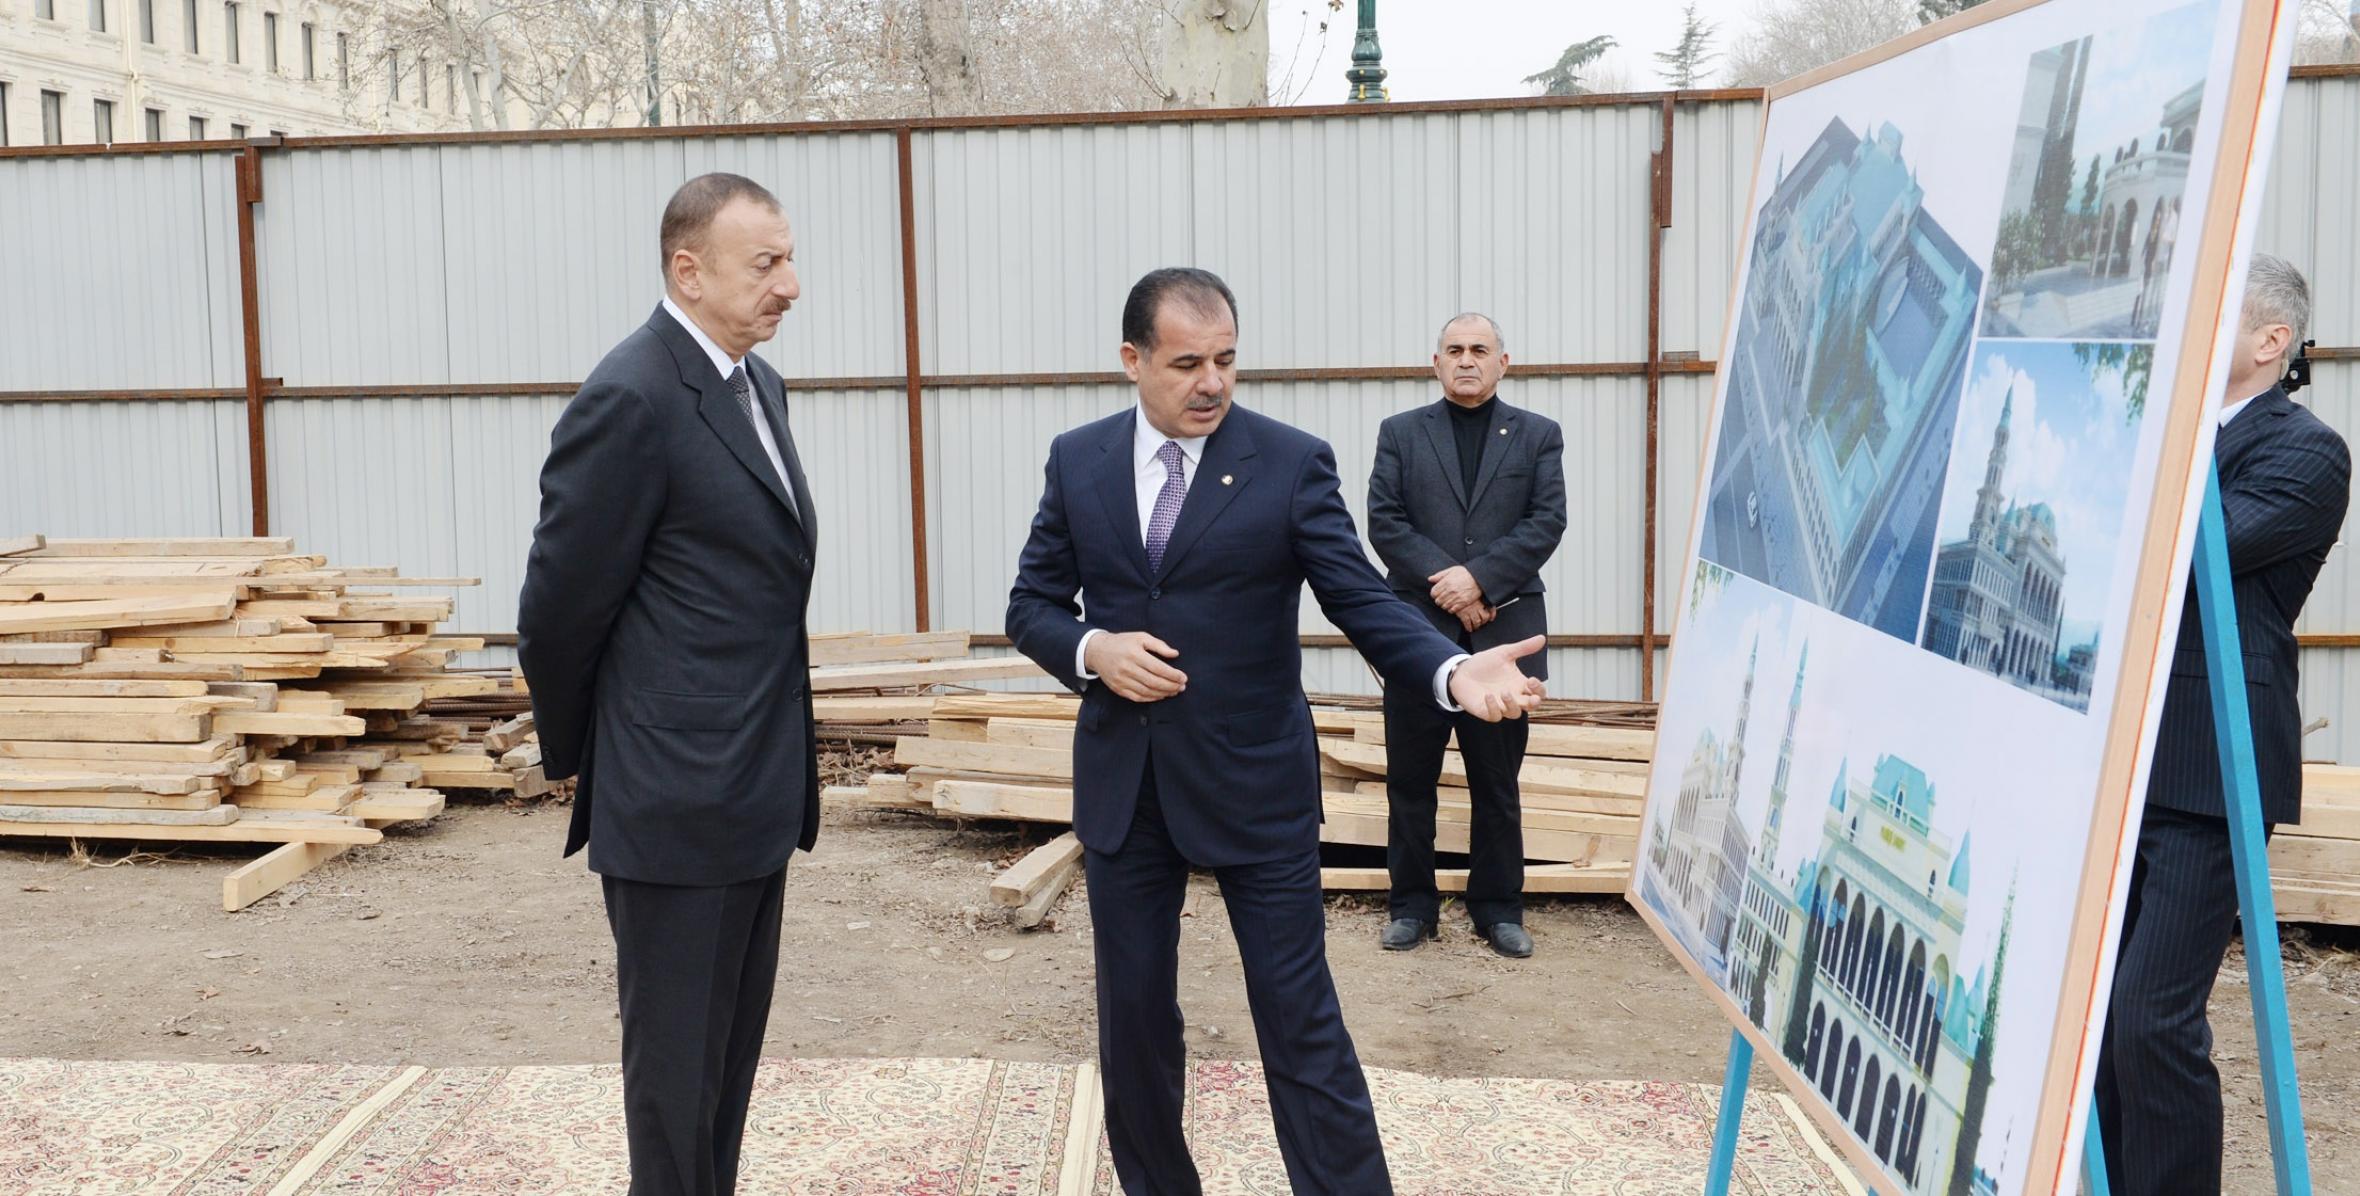 İlham Əliyev Gəncə Dövlət Filarmoniyasının yeni binasında aparılan inşaat işləri ilə tanış olmuşdur